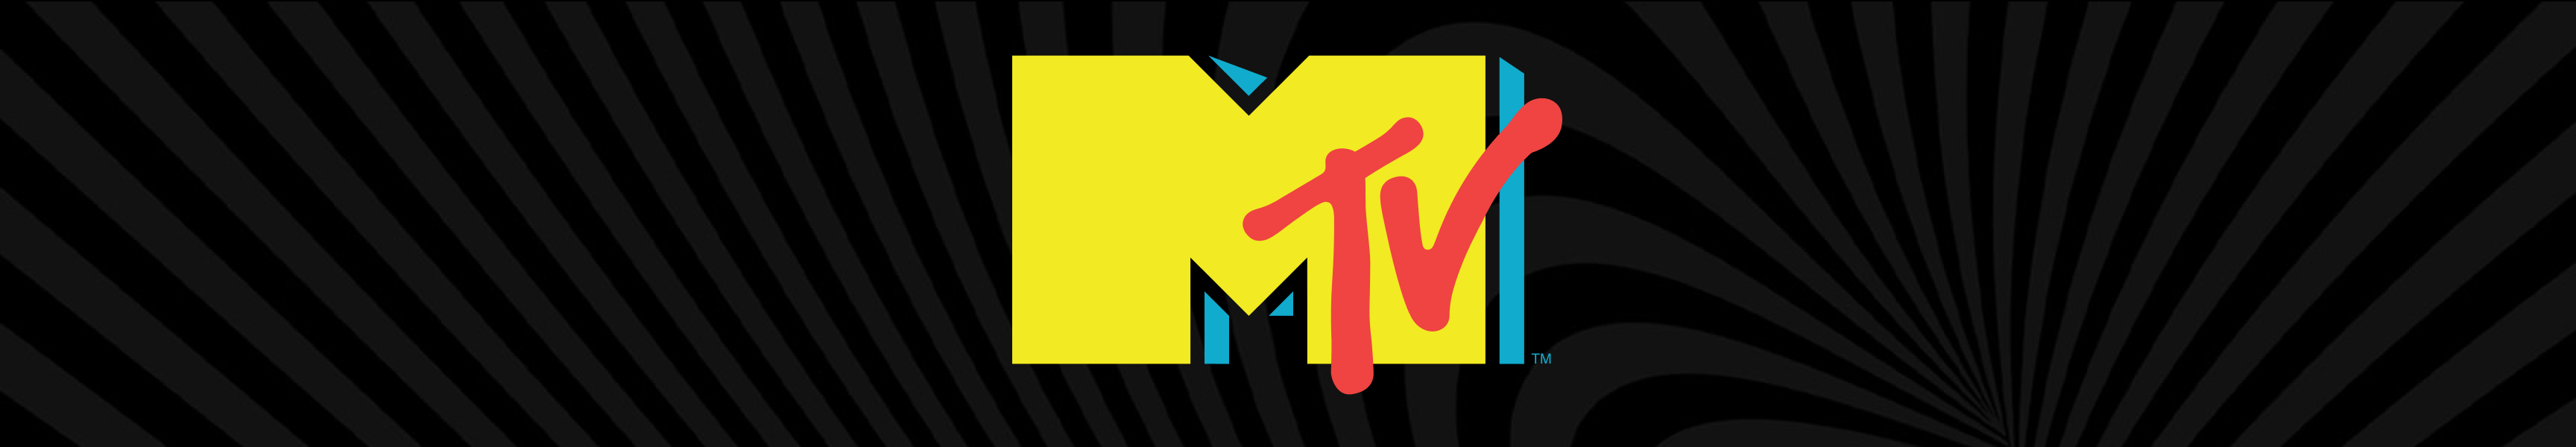 Accesorios MTV